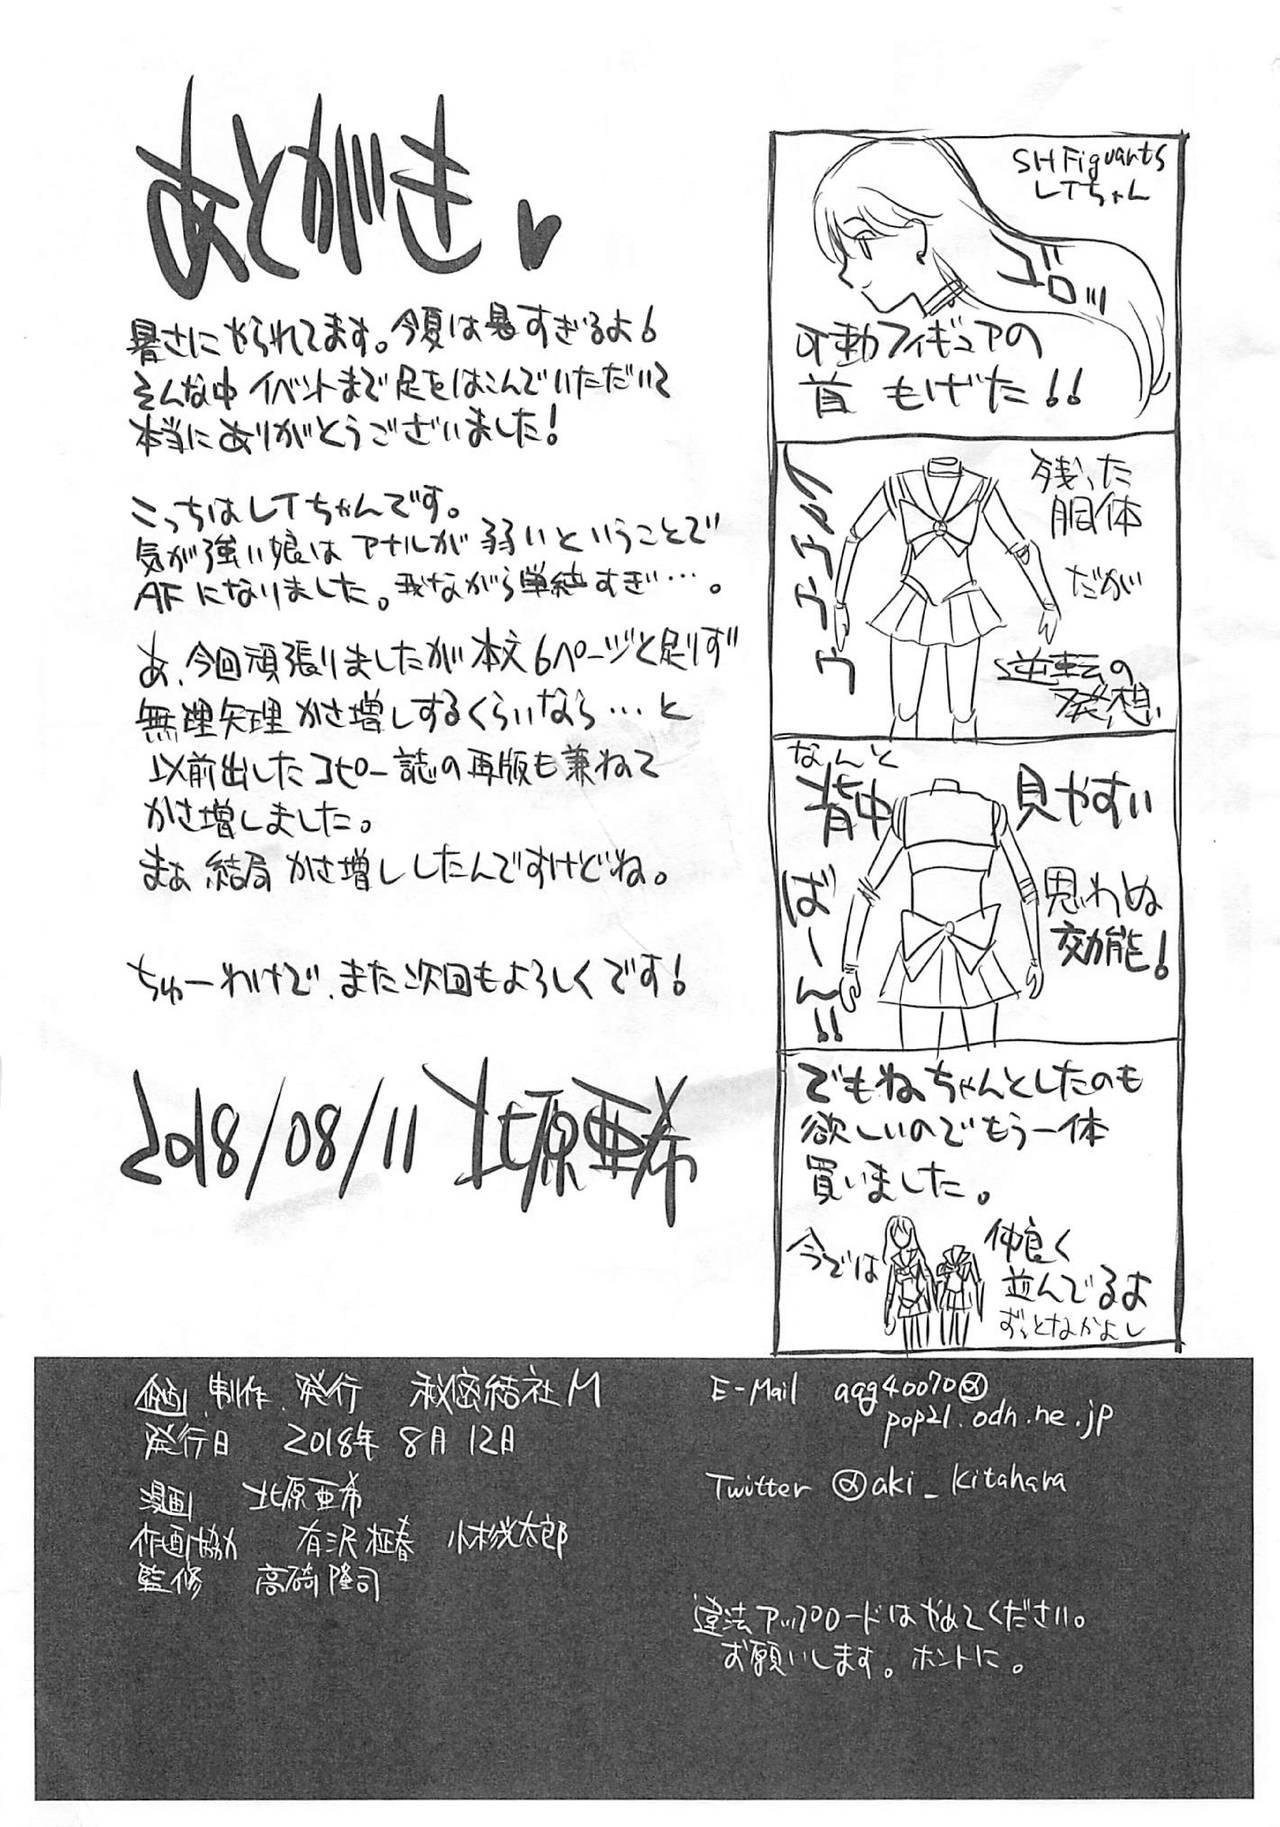 Stepsister Natsu no maazu toppatsu kopii-shi - Sailor moon | bishoujo senshi sailor moon Speculum - Page 17